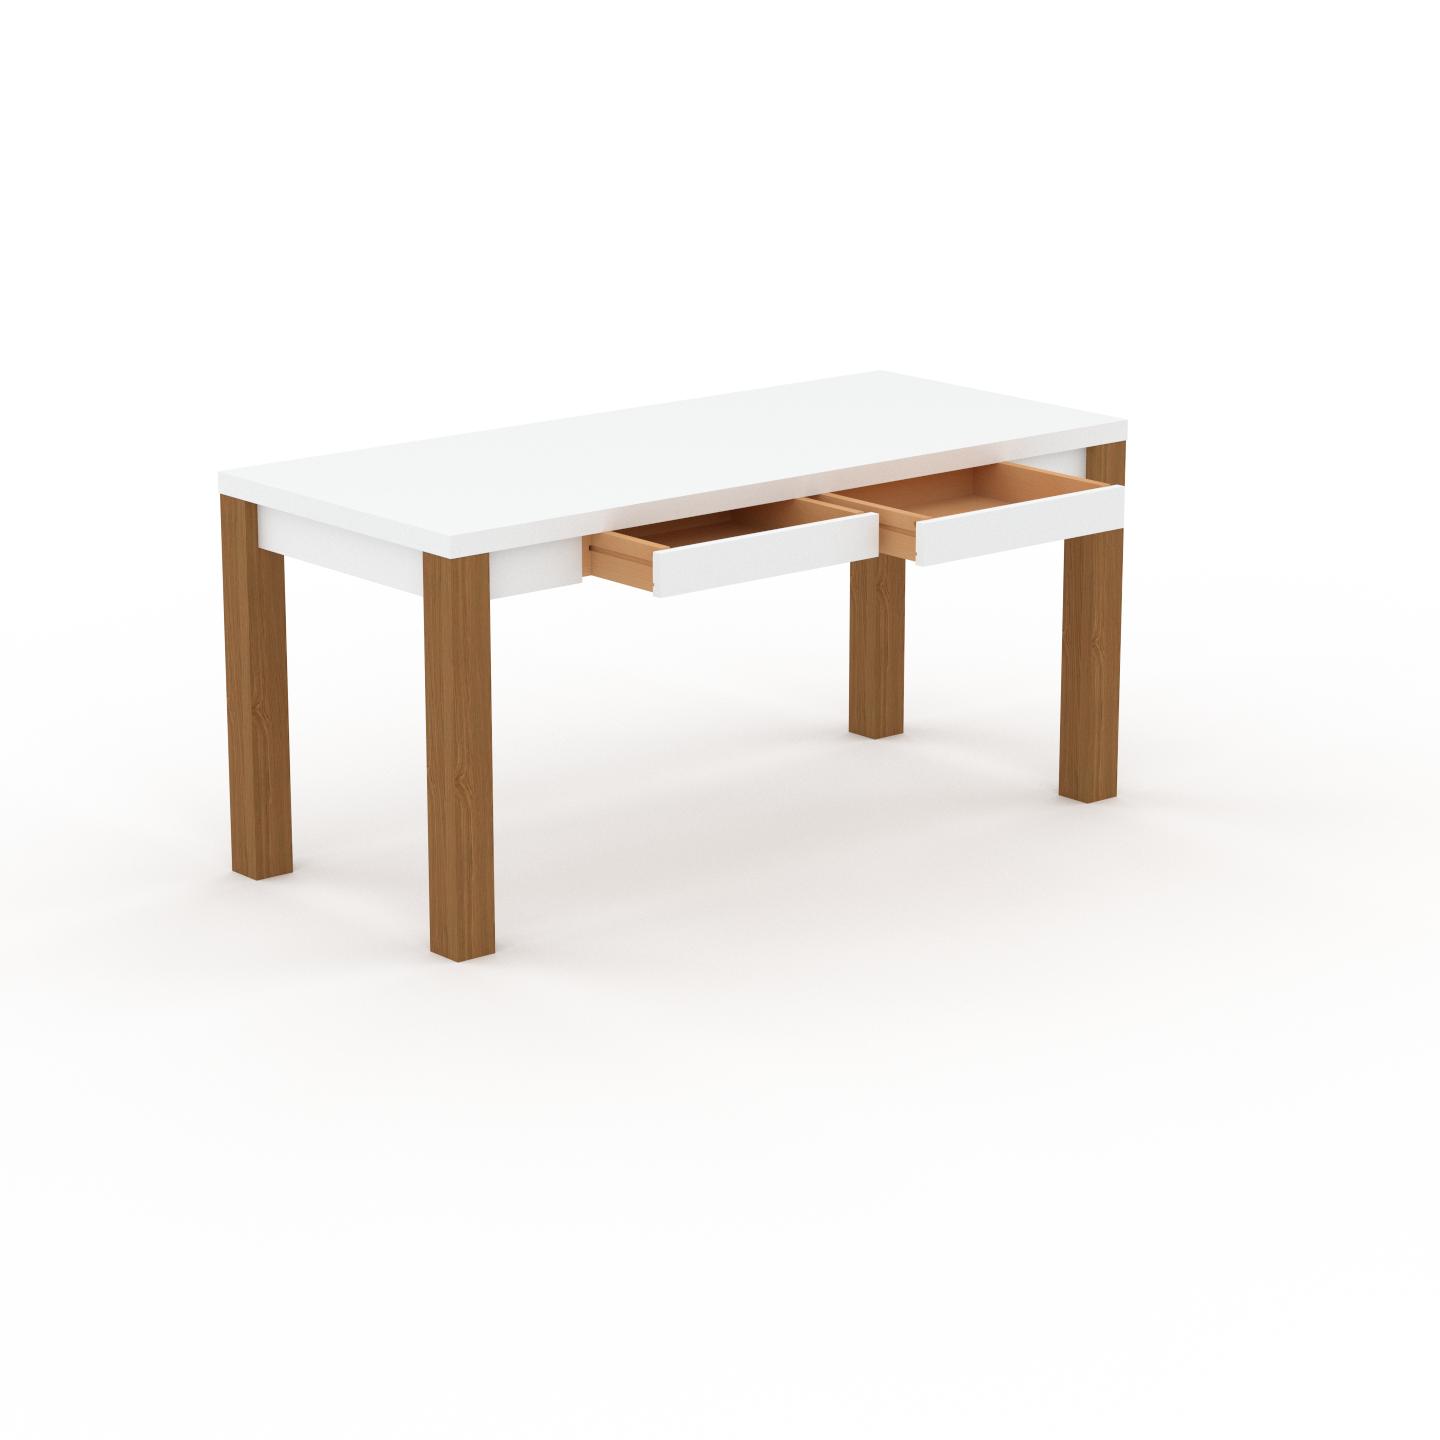 MYCS Schreibtisch Massivholz Weiß - Massivholz-Schreibtisch: mit 2 Schublade/n & Tischrahmen - Hochwertige Materialien - 160 x 76 x 70 cm, konfigurierbar